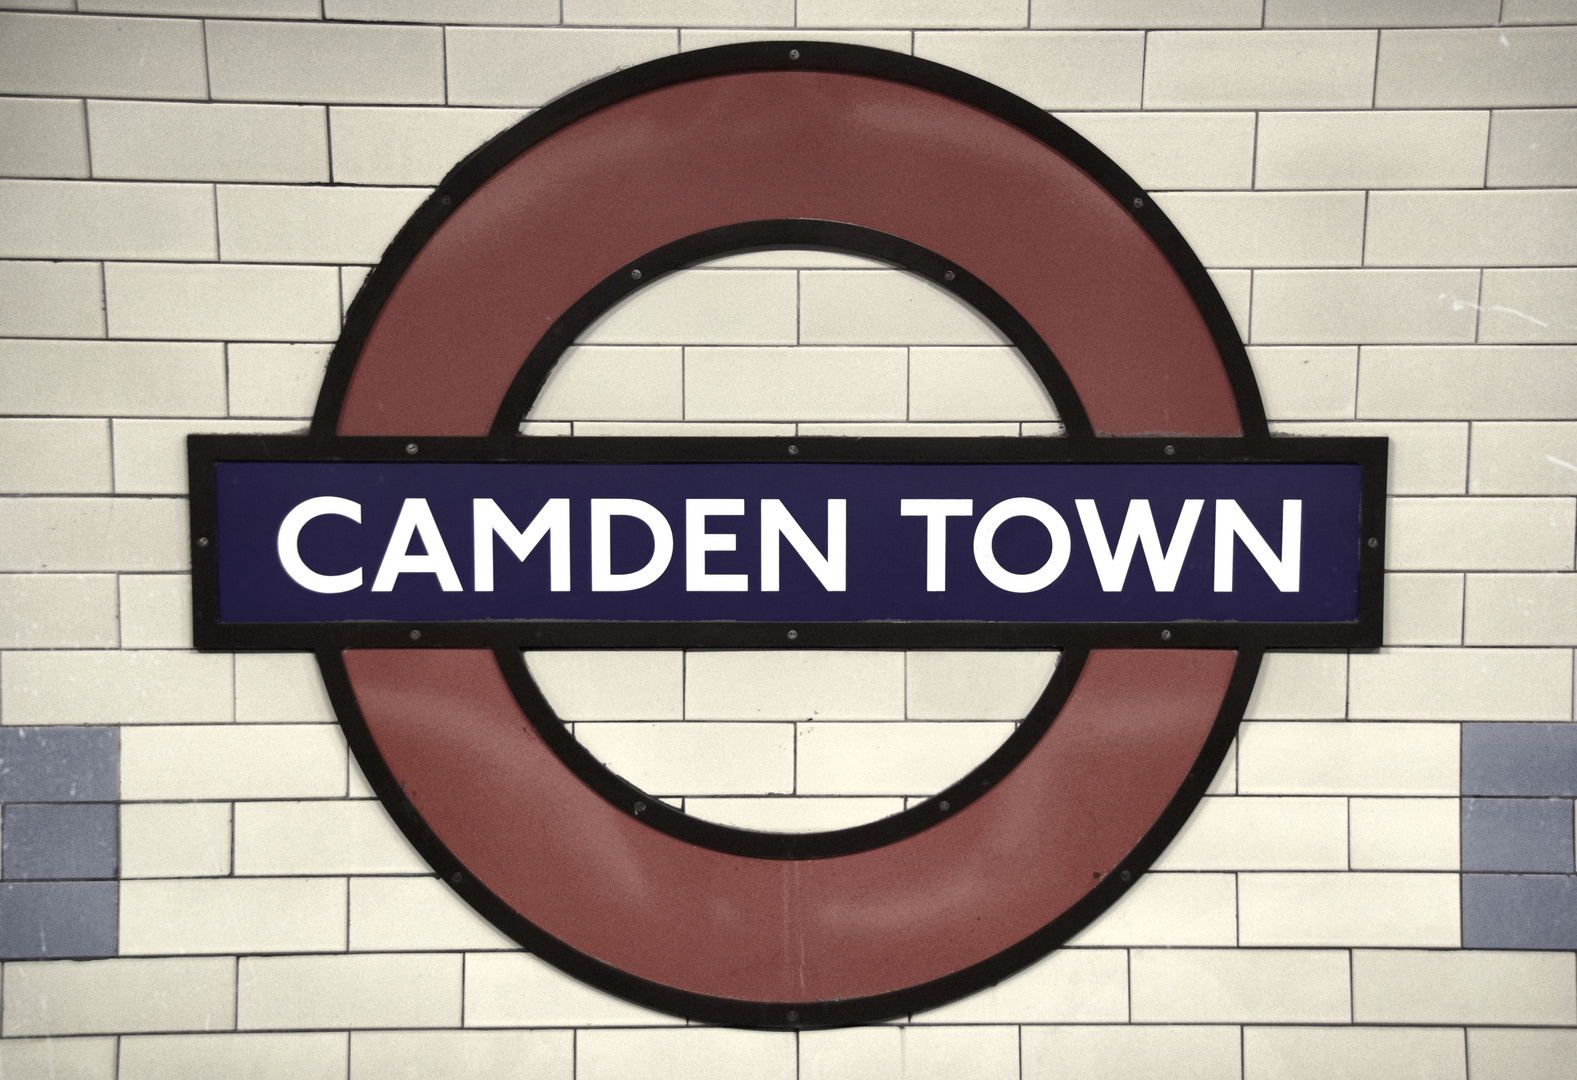 Views of Camden 2-4